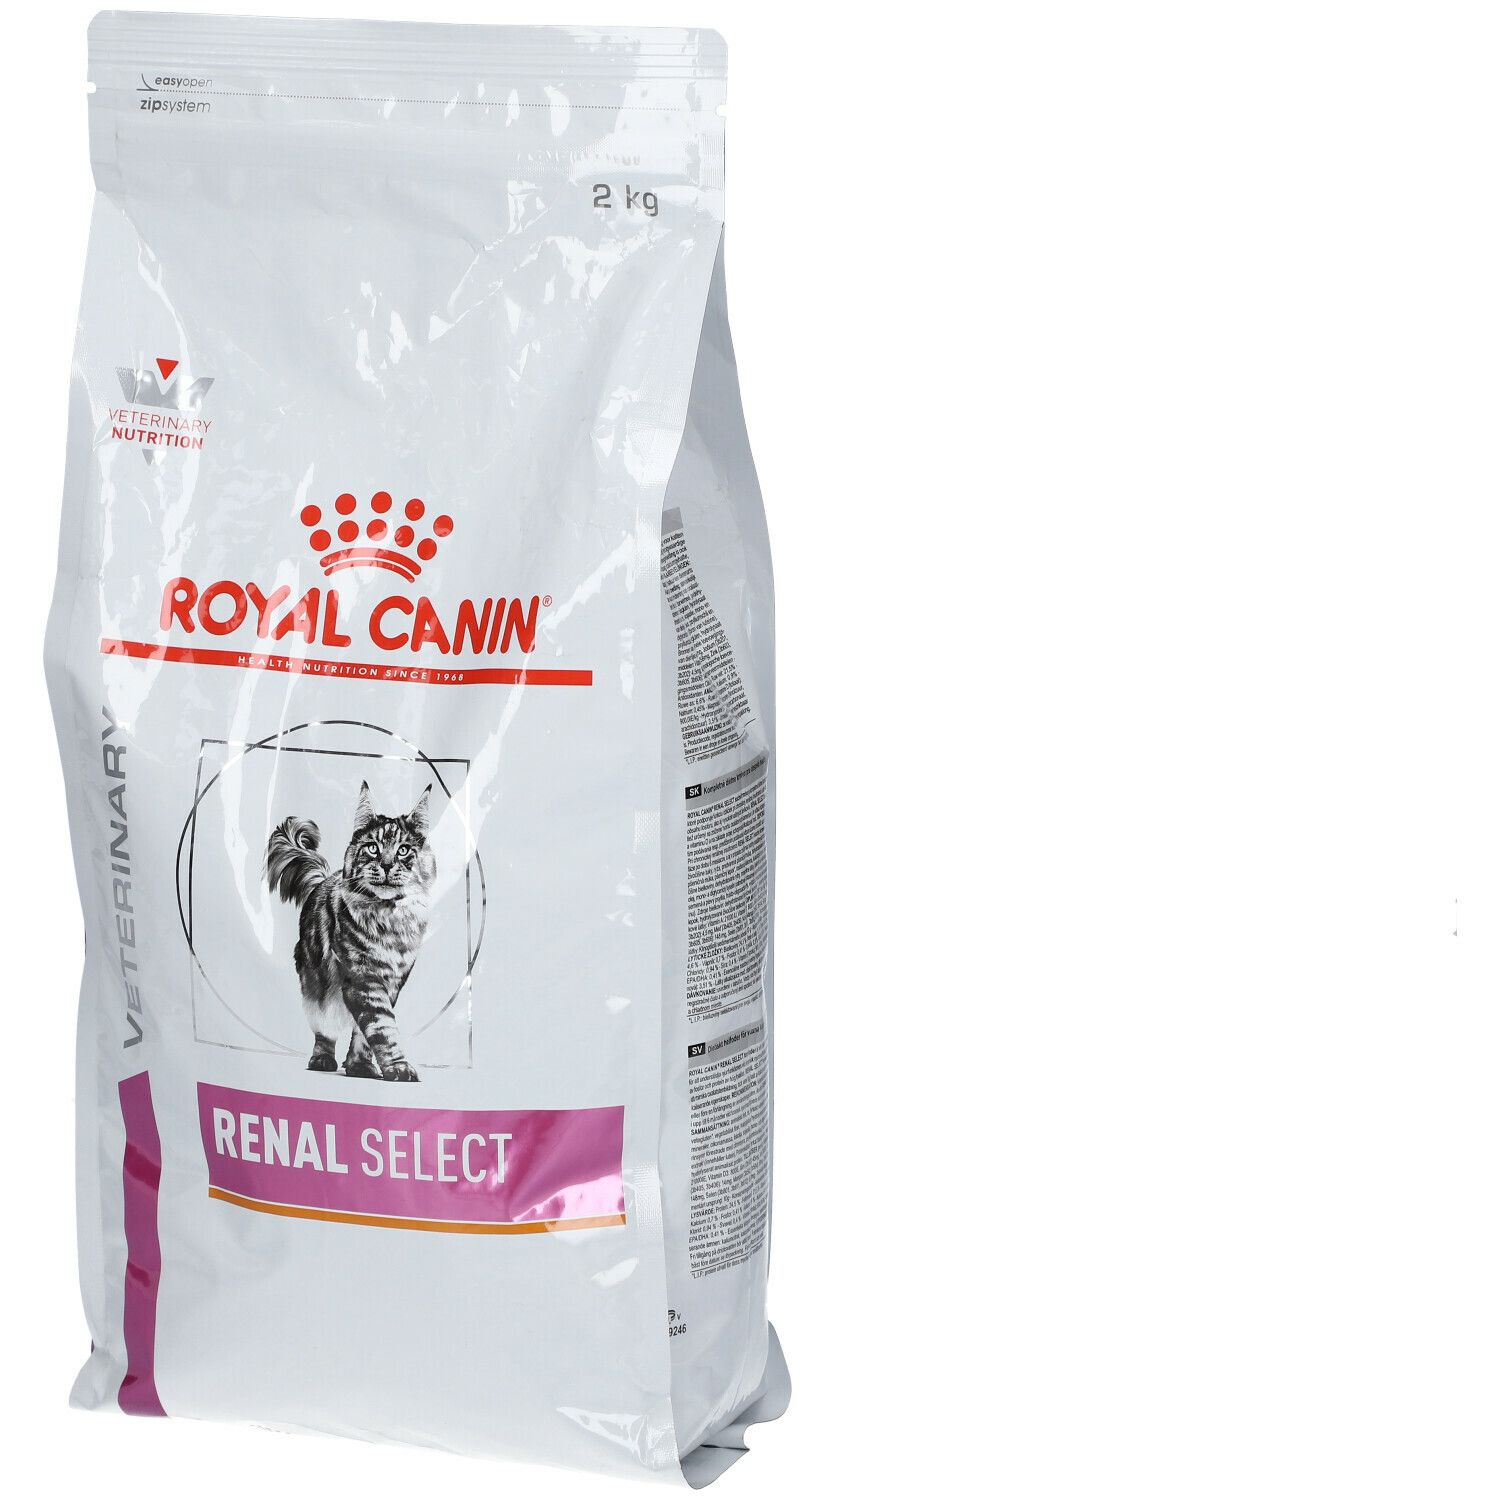 Royal Canin® Renal Select